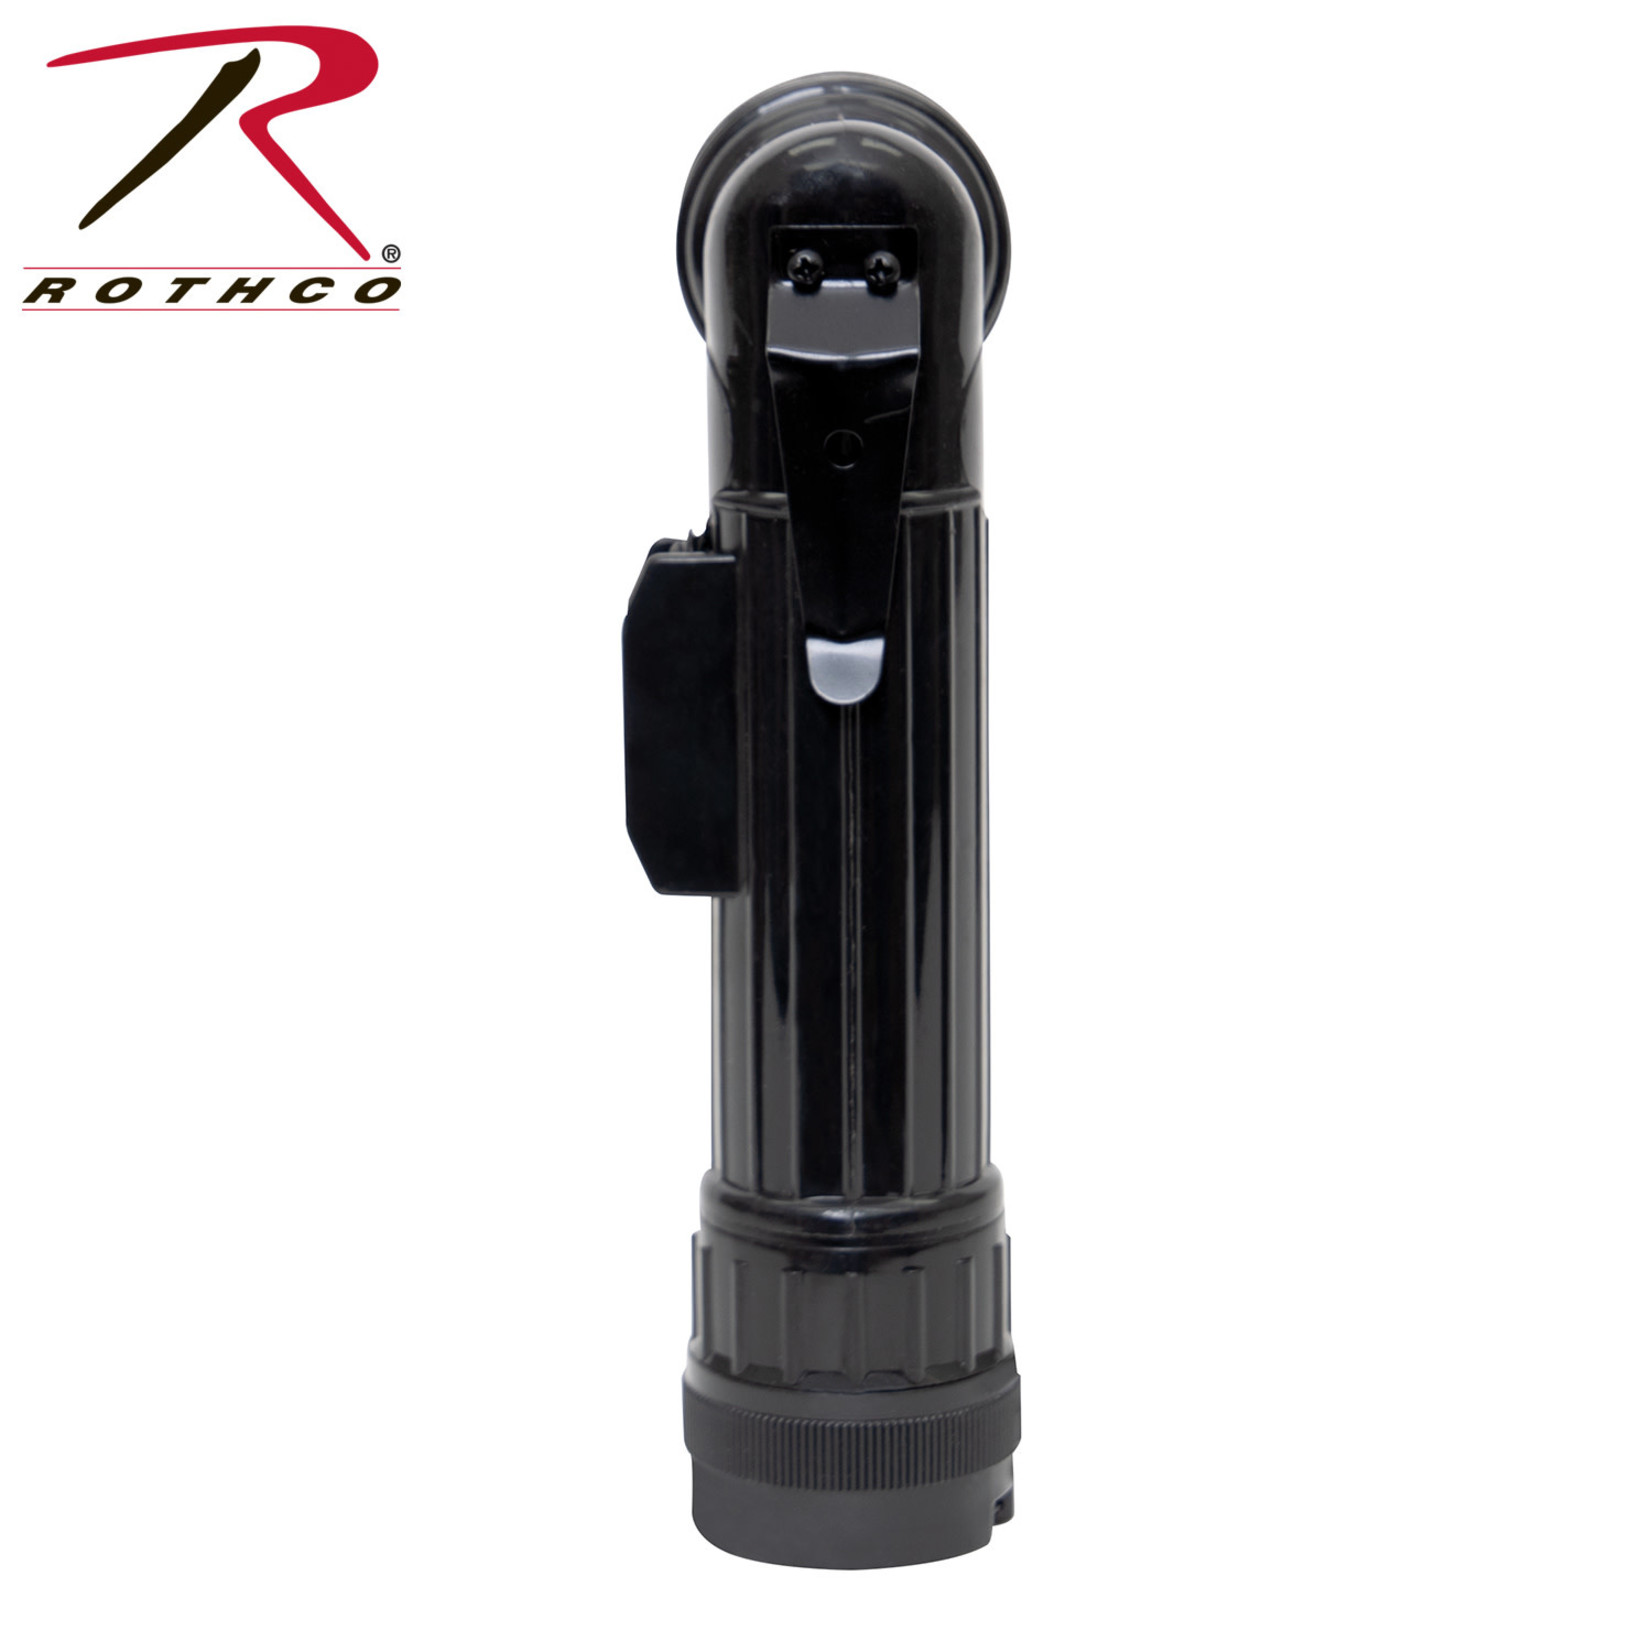 Rothco R GI Type Angle Head Flashlight w/ Color Filters